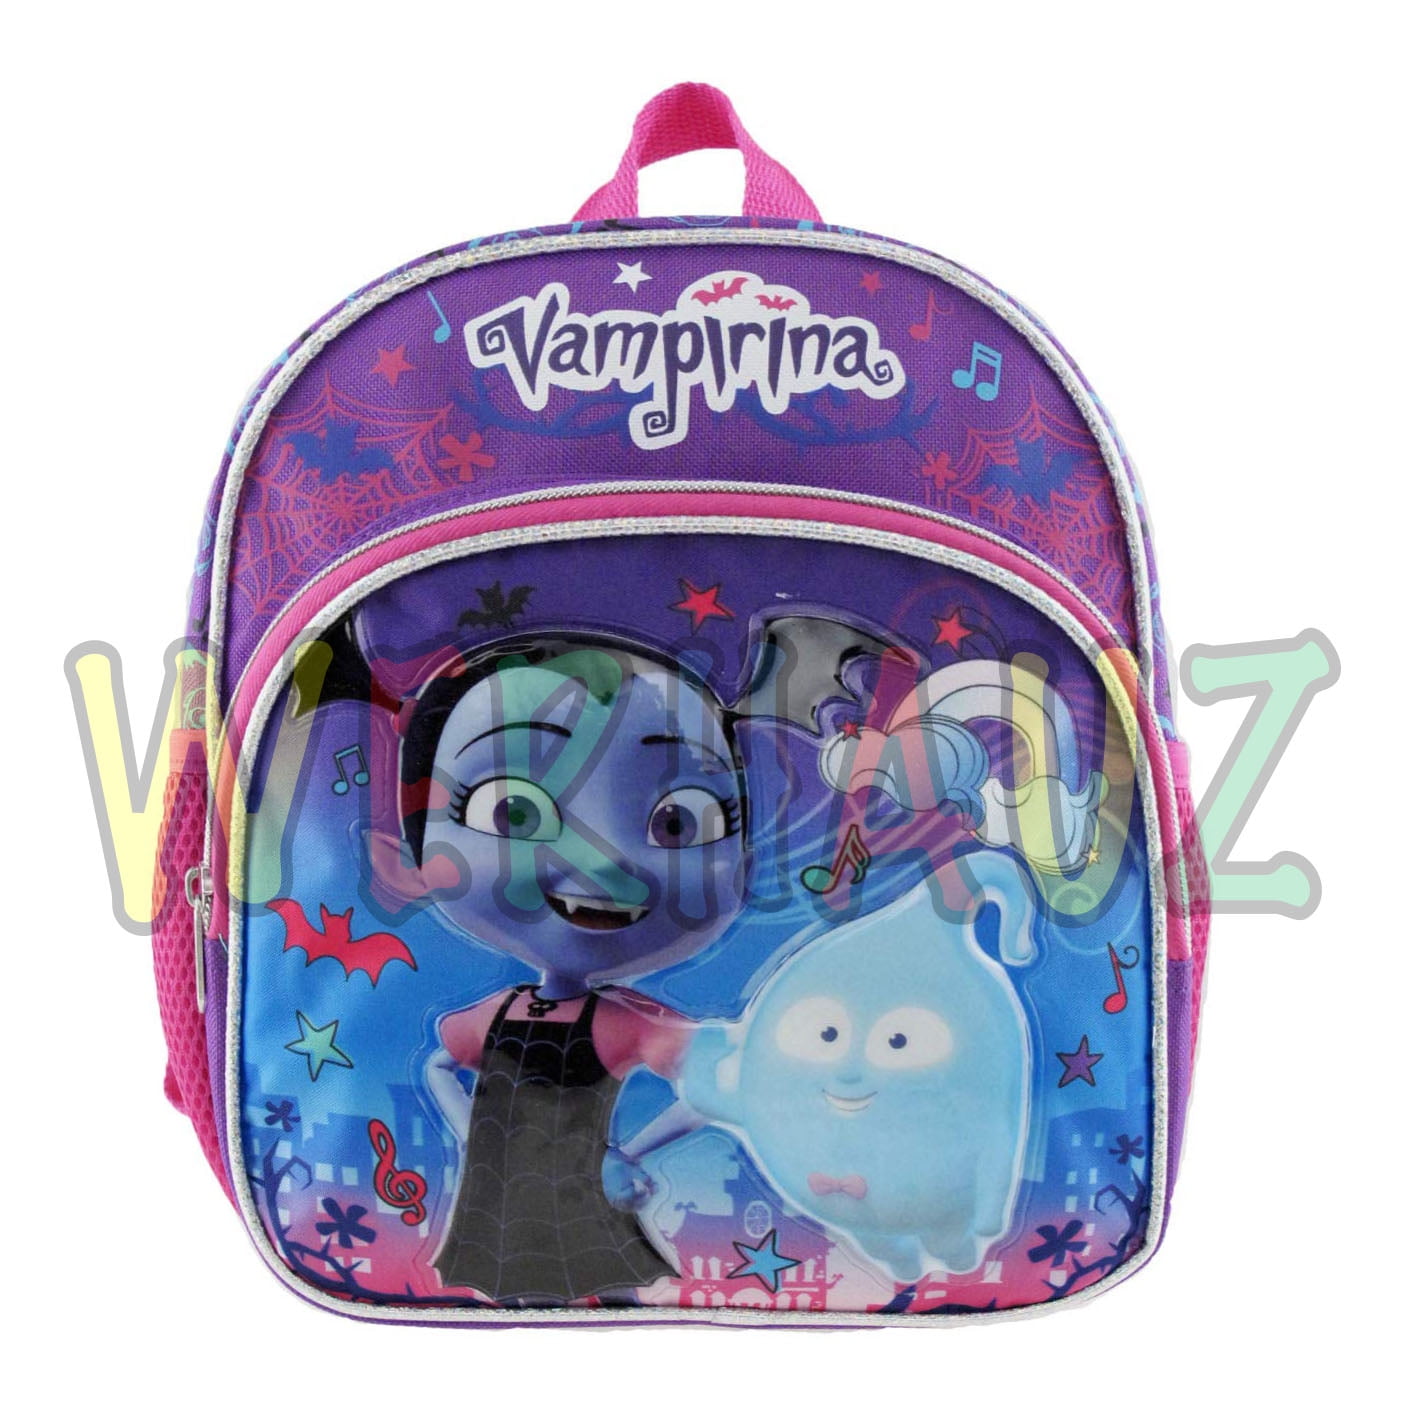 Details about   Disney's Vampirina 12" Emoji Bats Toddler Size Backpack